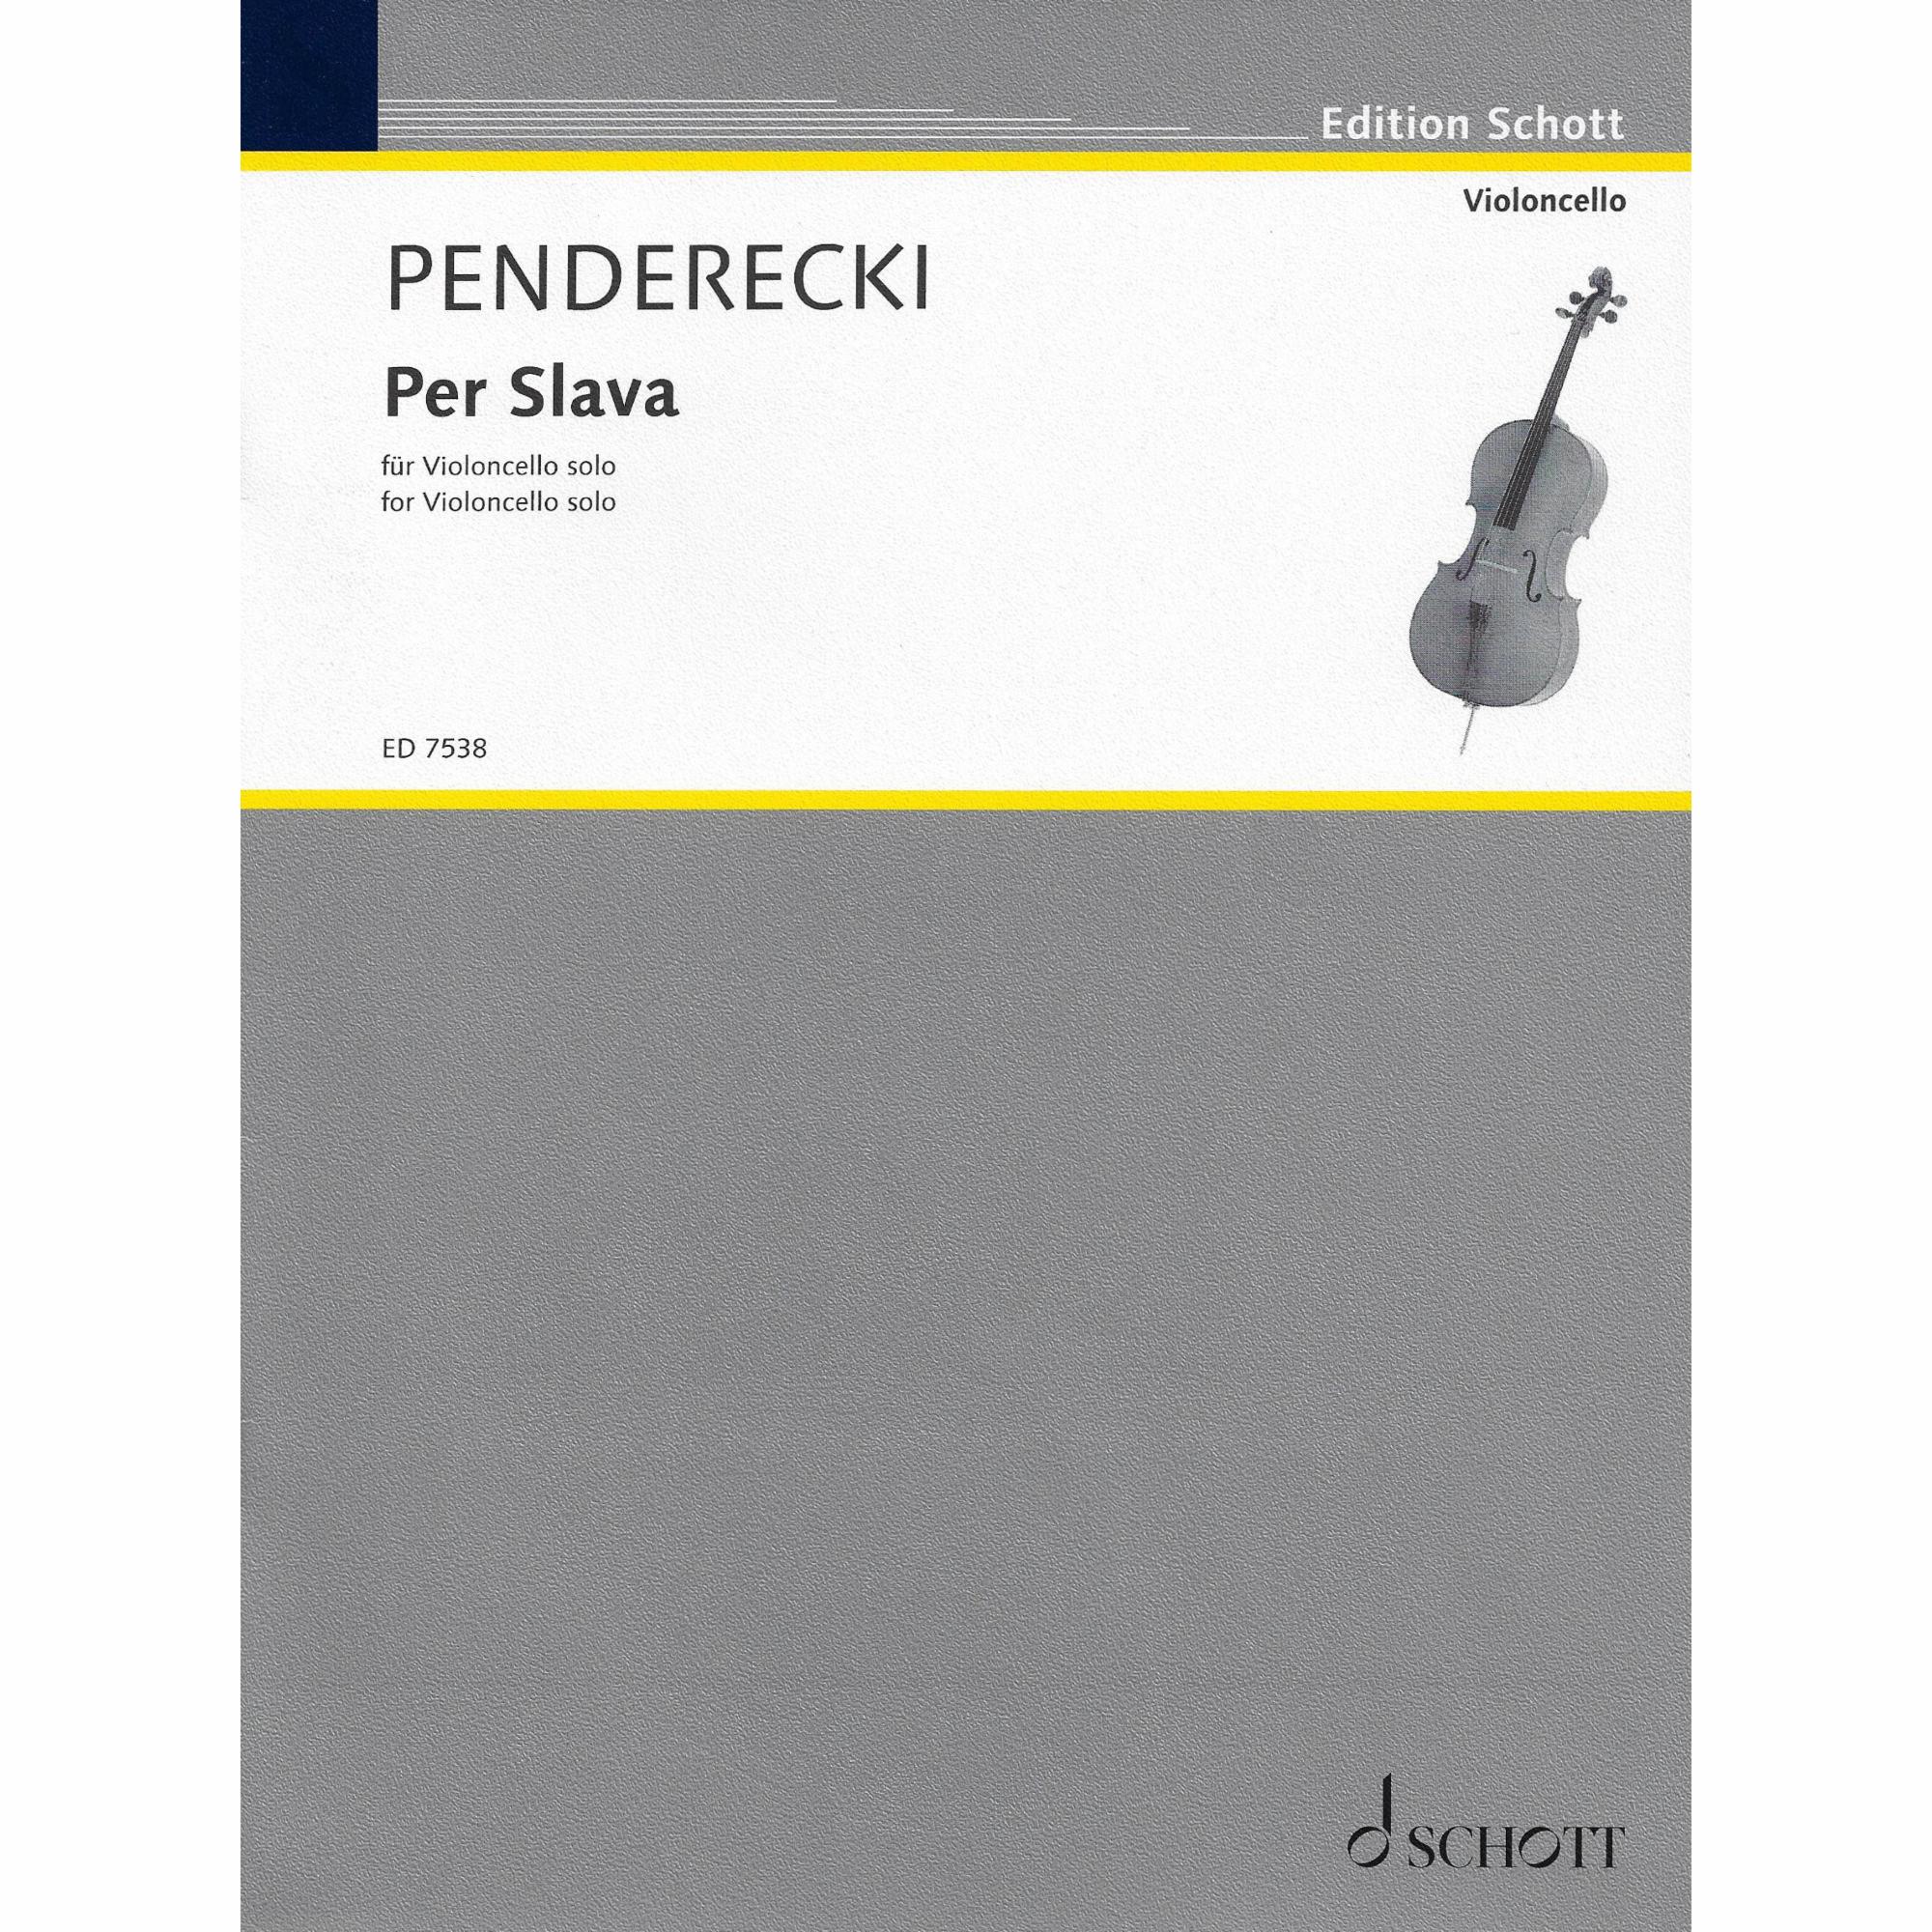 Penderecki -- Per Slava for Solo Cello